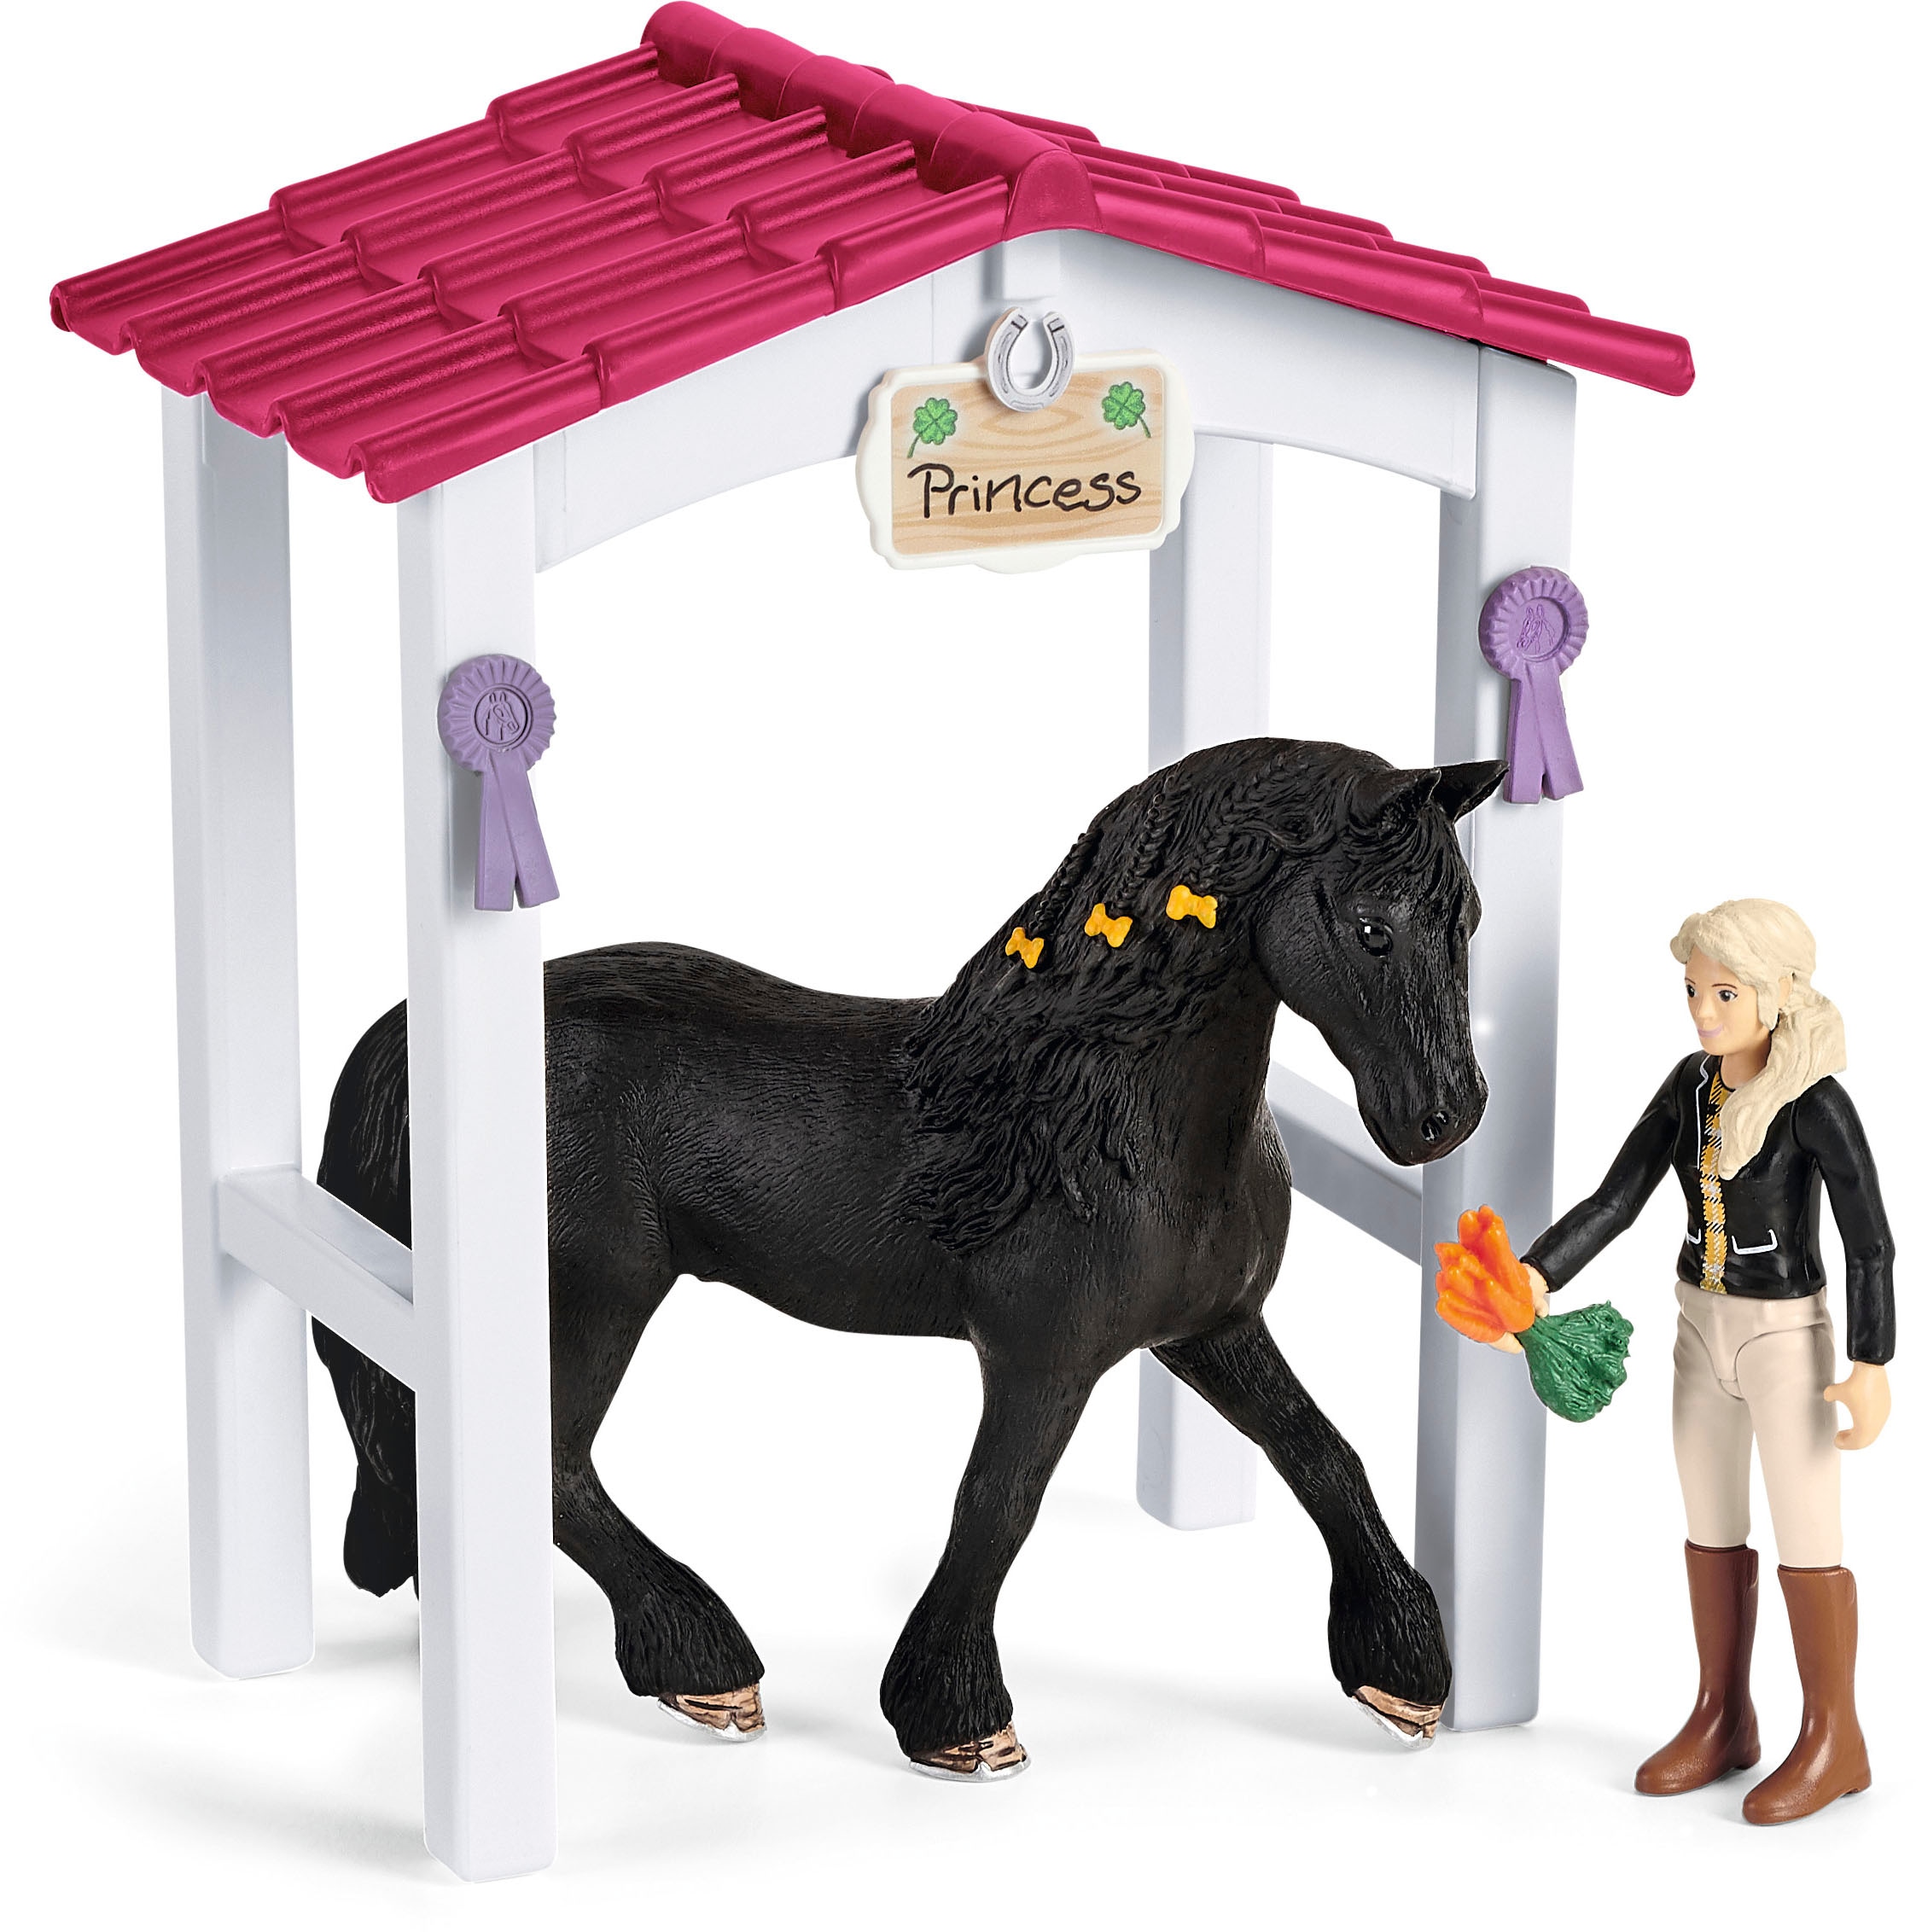 Schleich® Spielfigur »HORSE CLUB, Tori und Princess (42437)«, Made in Europe